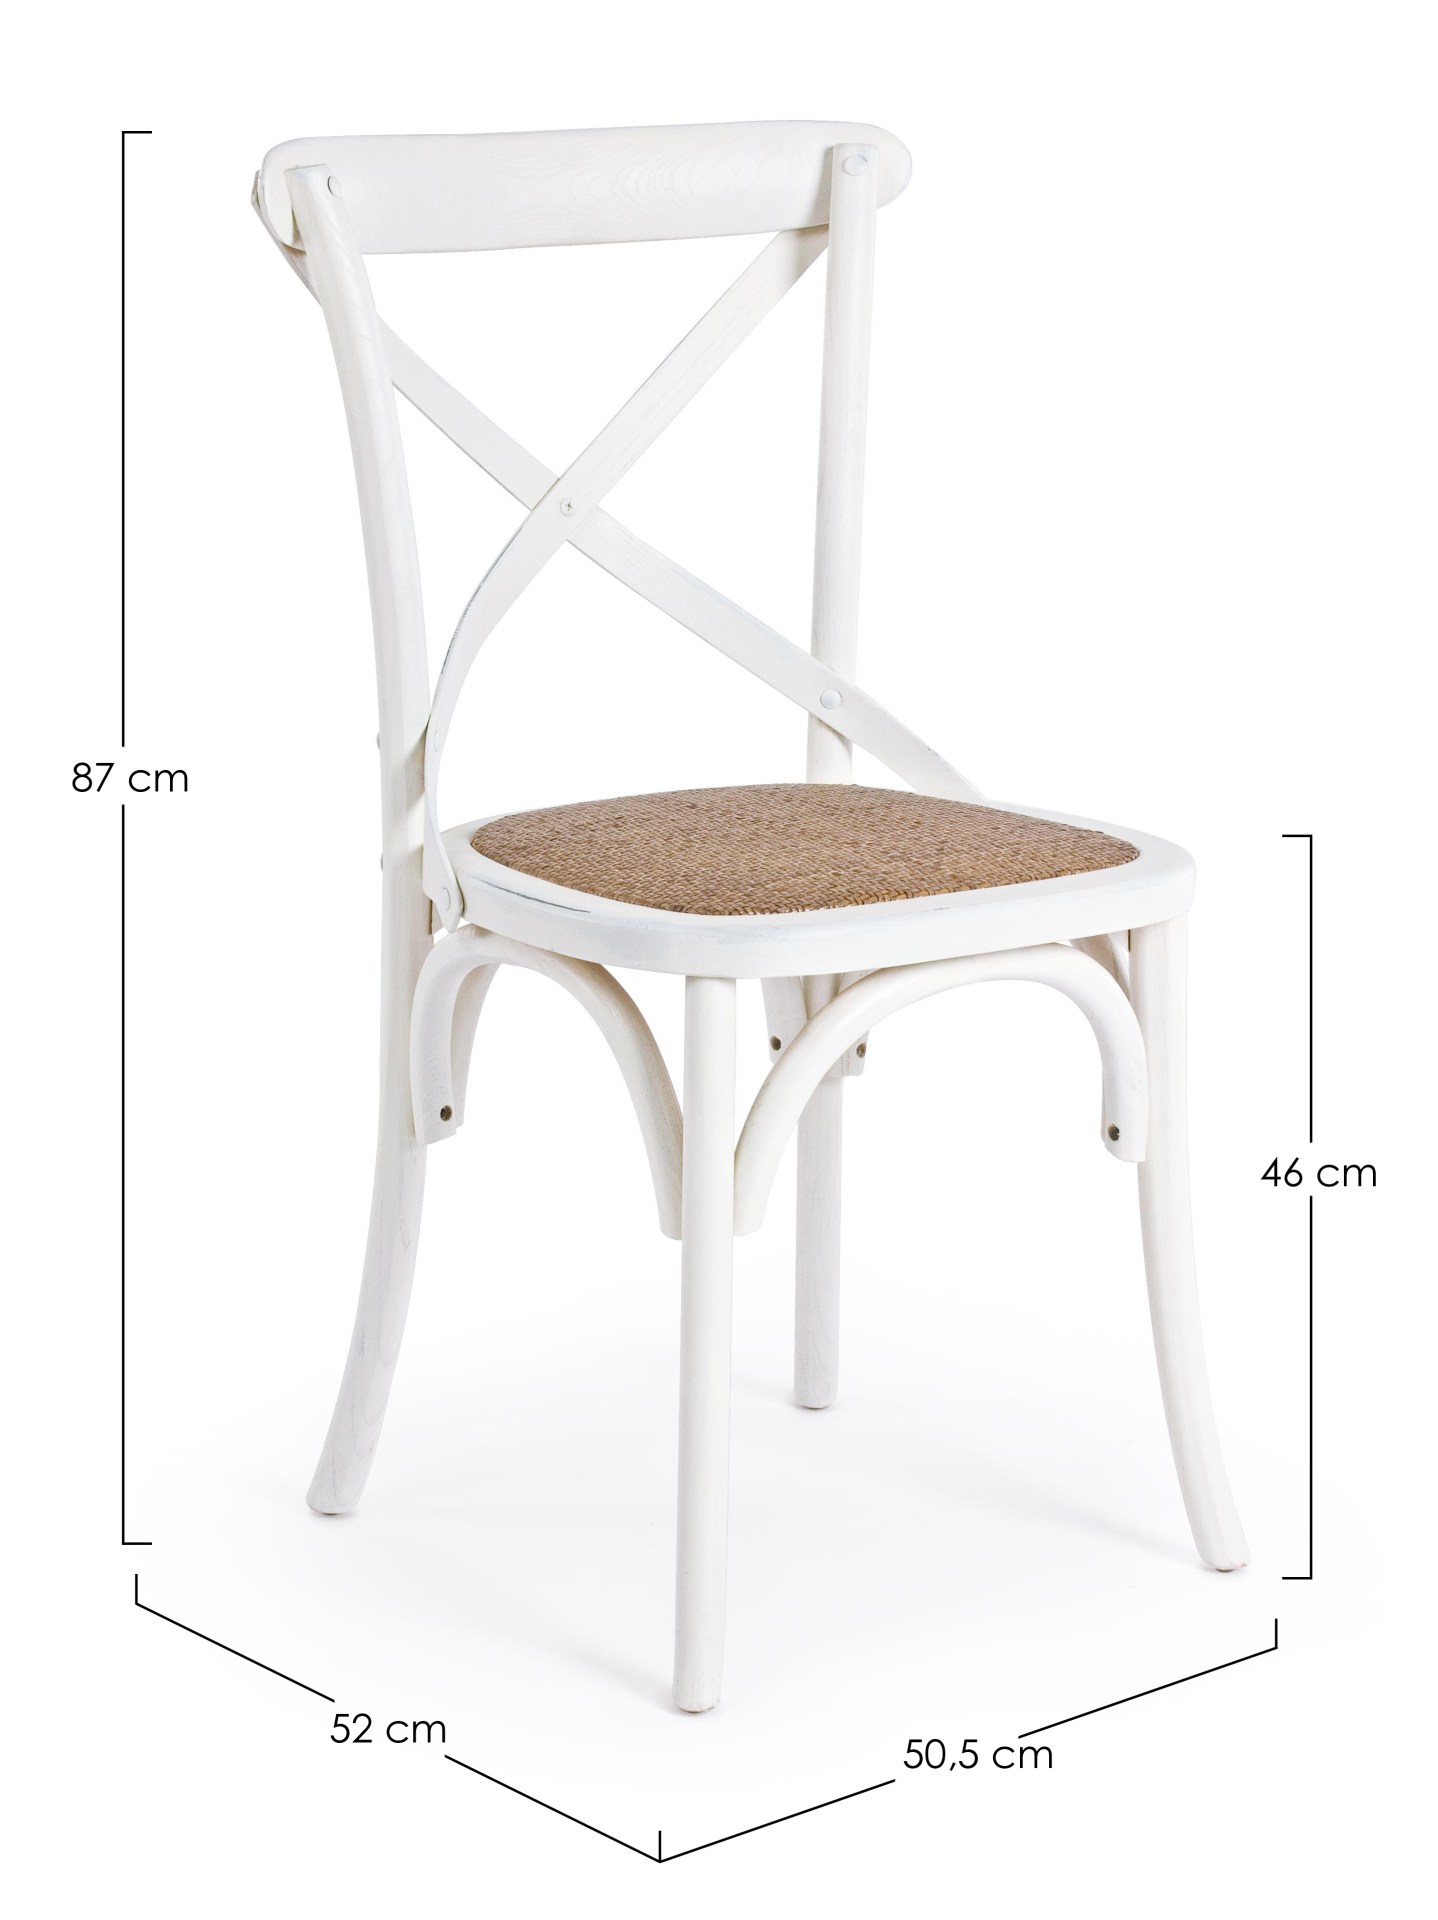 Der Stuhl Cross überzeugt mit seinem klassischen Design. Gefertigt wurde der Stuhl aus Ulmenholz, welches einen weißen Farbton besitzt. Die Sitz- und Rückenfläche ist aus Rattan gefertigt. Die Sitzhöhe beträgt 46 cm.